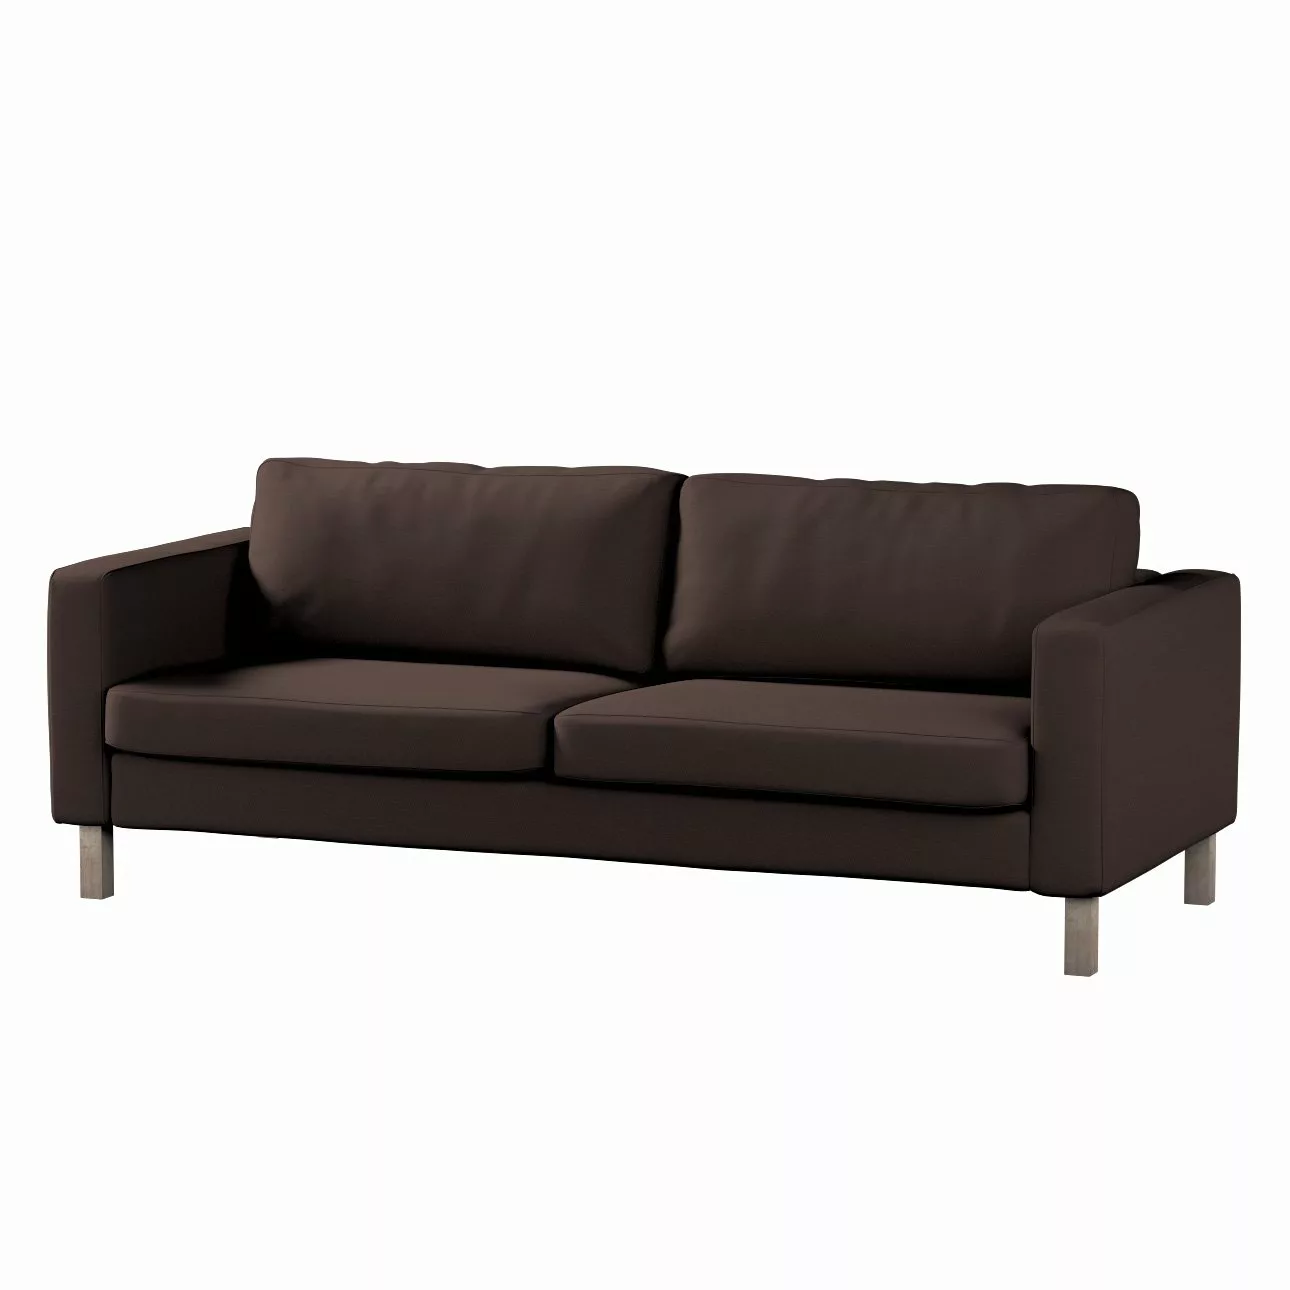 Bezug für Karlstad 3-Sitzer Sofa nicht ausklappbar, kurz, Kaffee, Bezug für günstig online kaufen